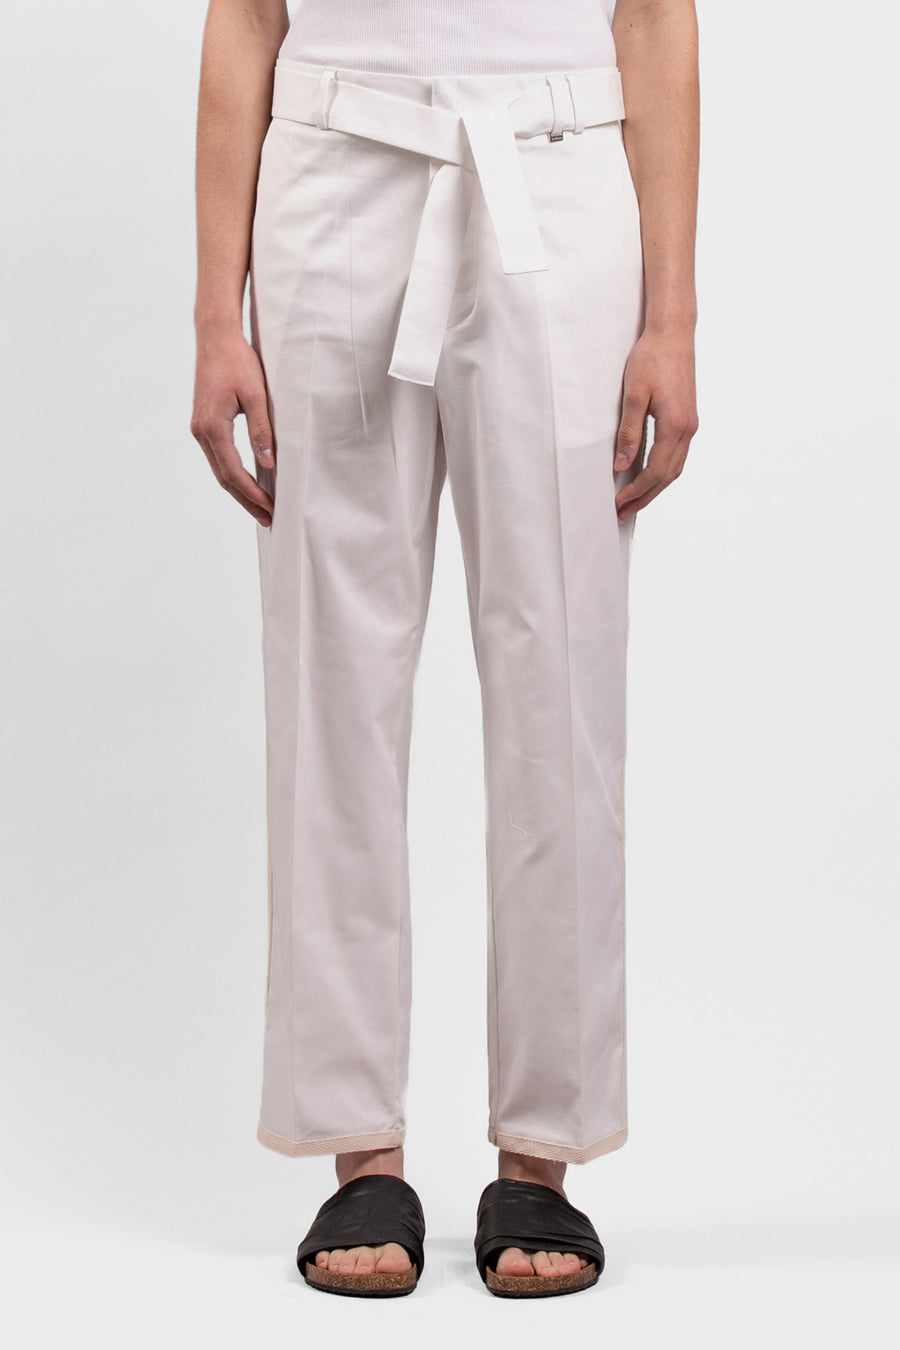 Pantalone in cotone corto e largo con dettagli contrasto  - Panna